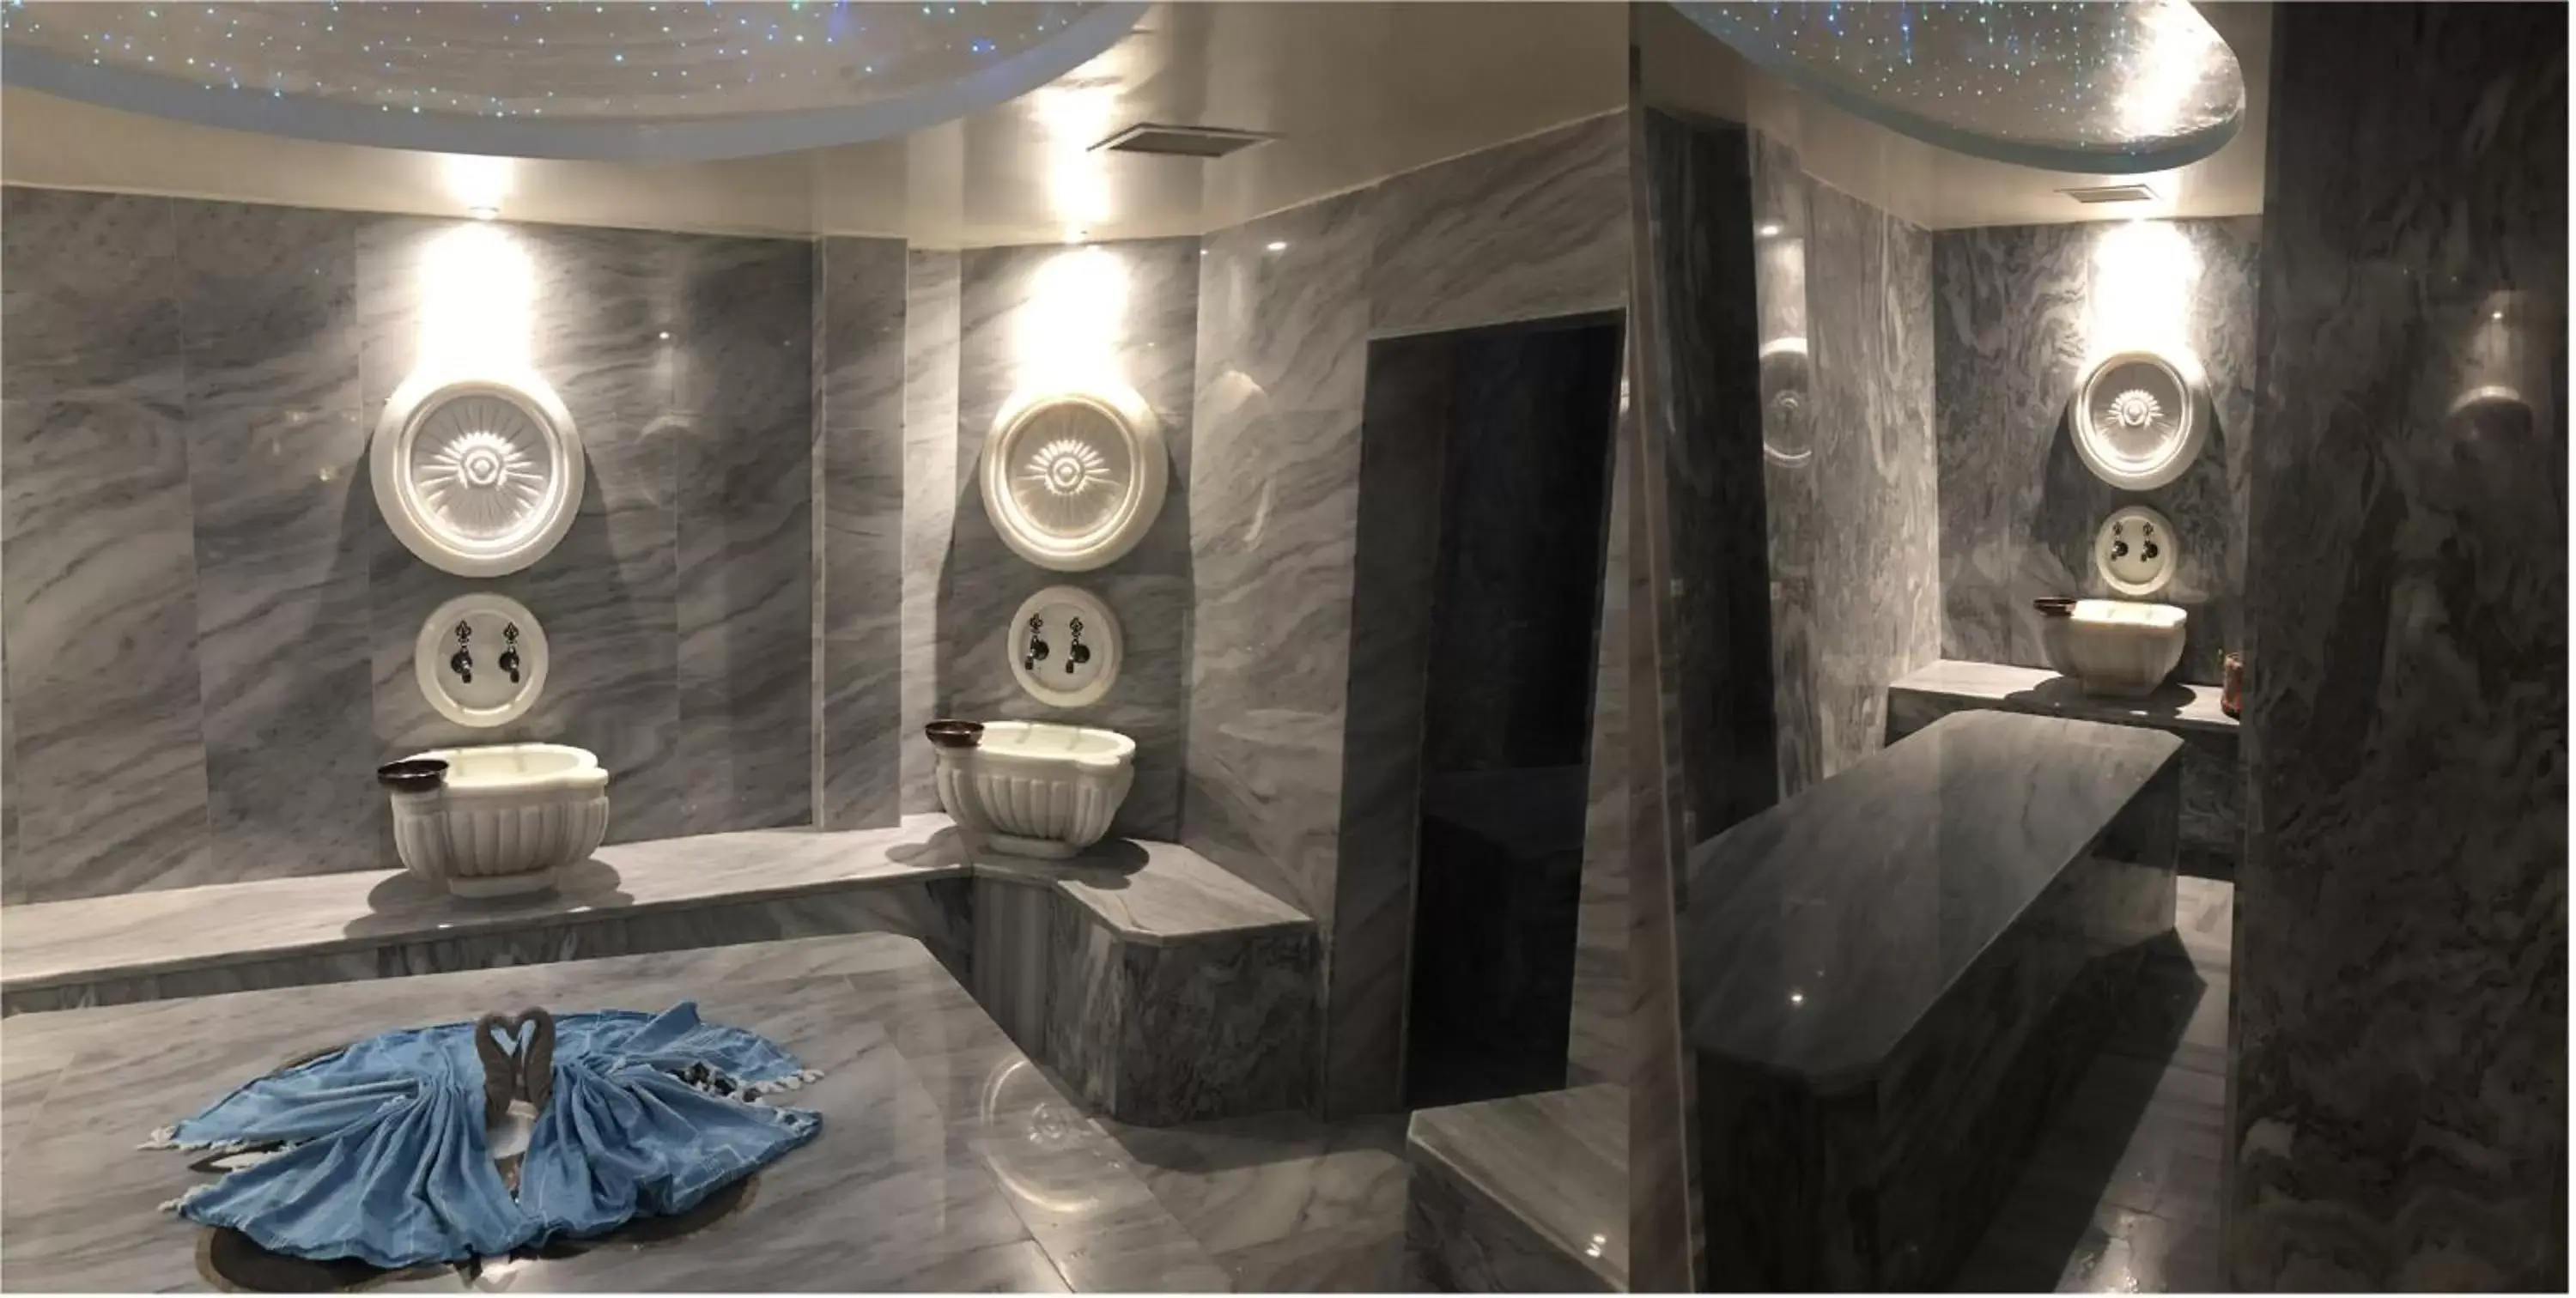 Hot Spring Bath, Bathroom in Akgun Istanbul Hotel